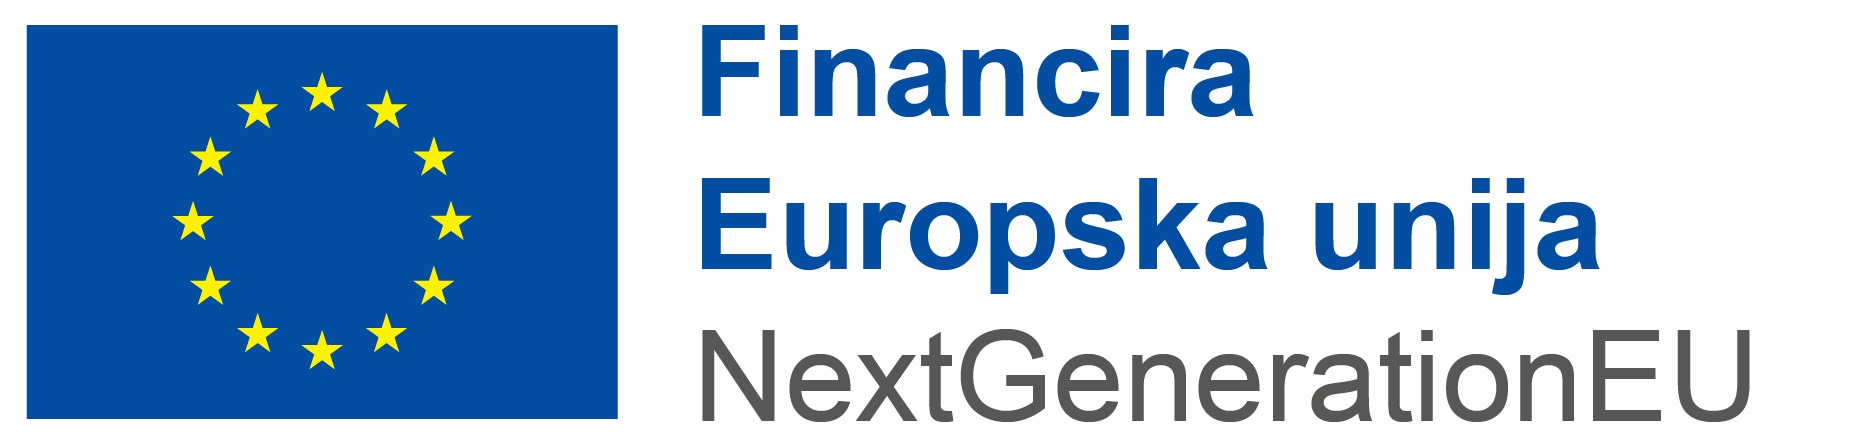 Logo Financira Europska unija - EU NextGen